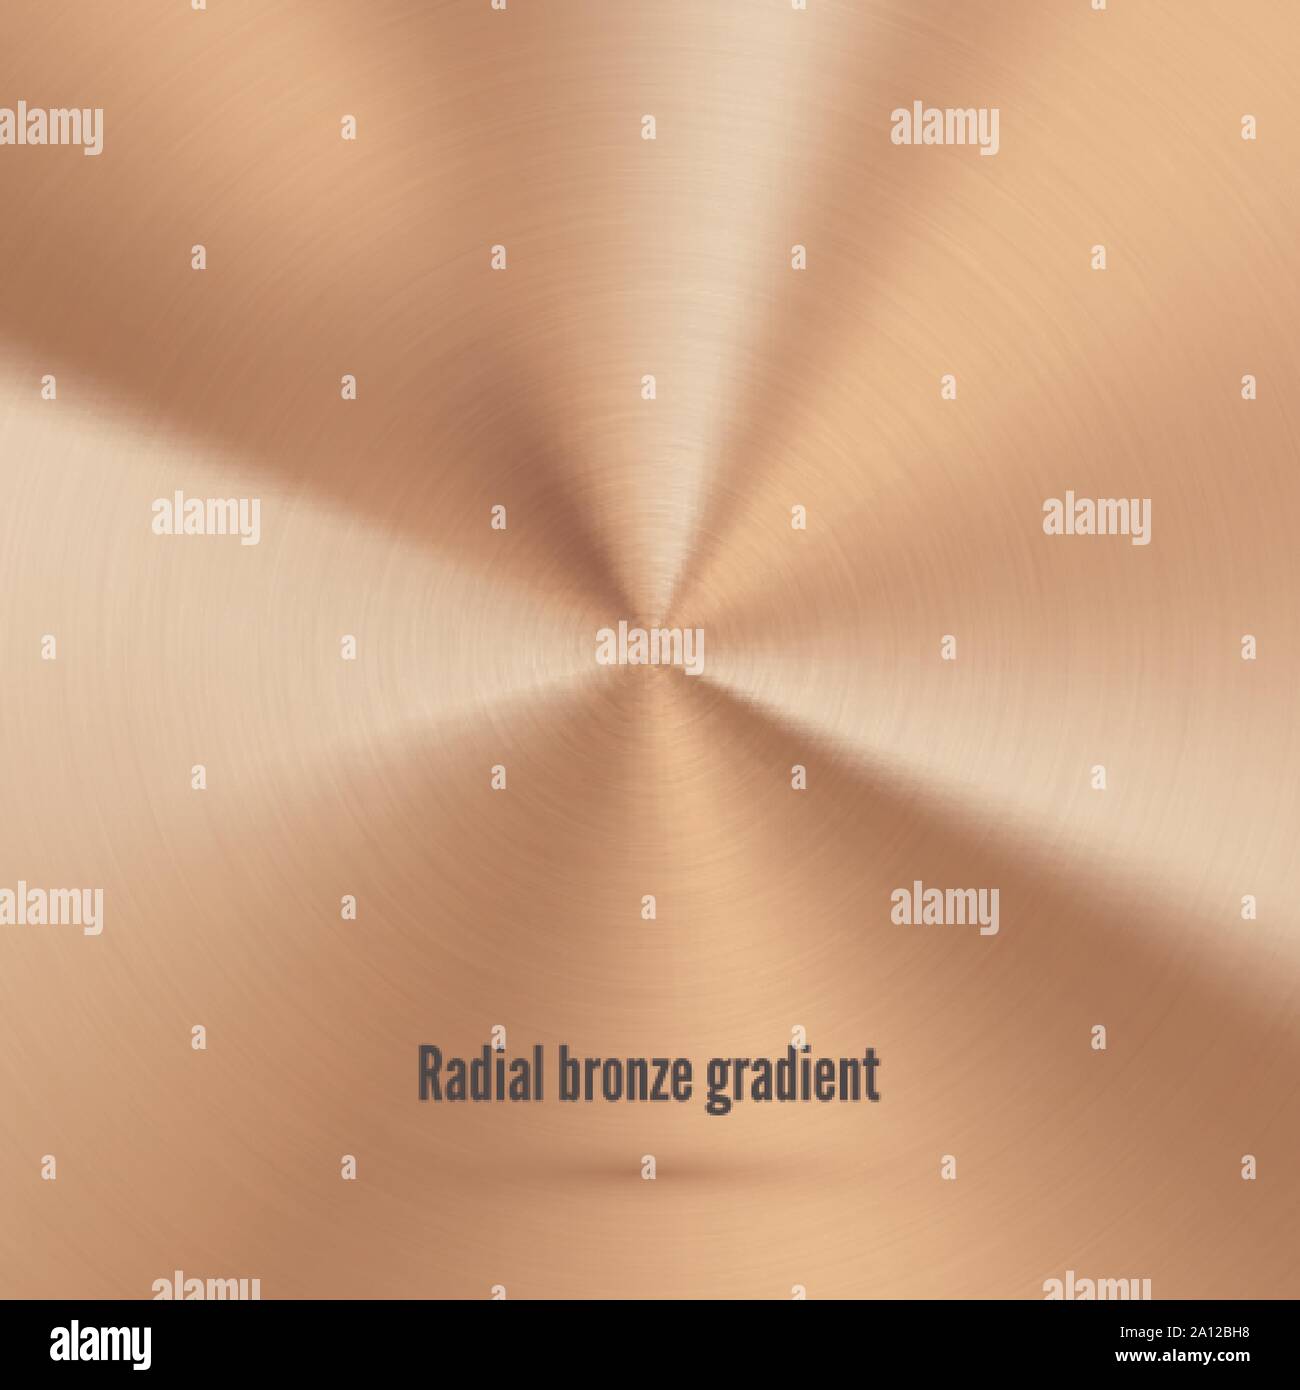 Bronzo Texture radiale con graffi. Lamina metallica di superficie. Rame gradiente realistiche. Oro rosa Pattern. Illustrazione Vettoriale Illustrazione Vettoriale